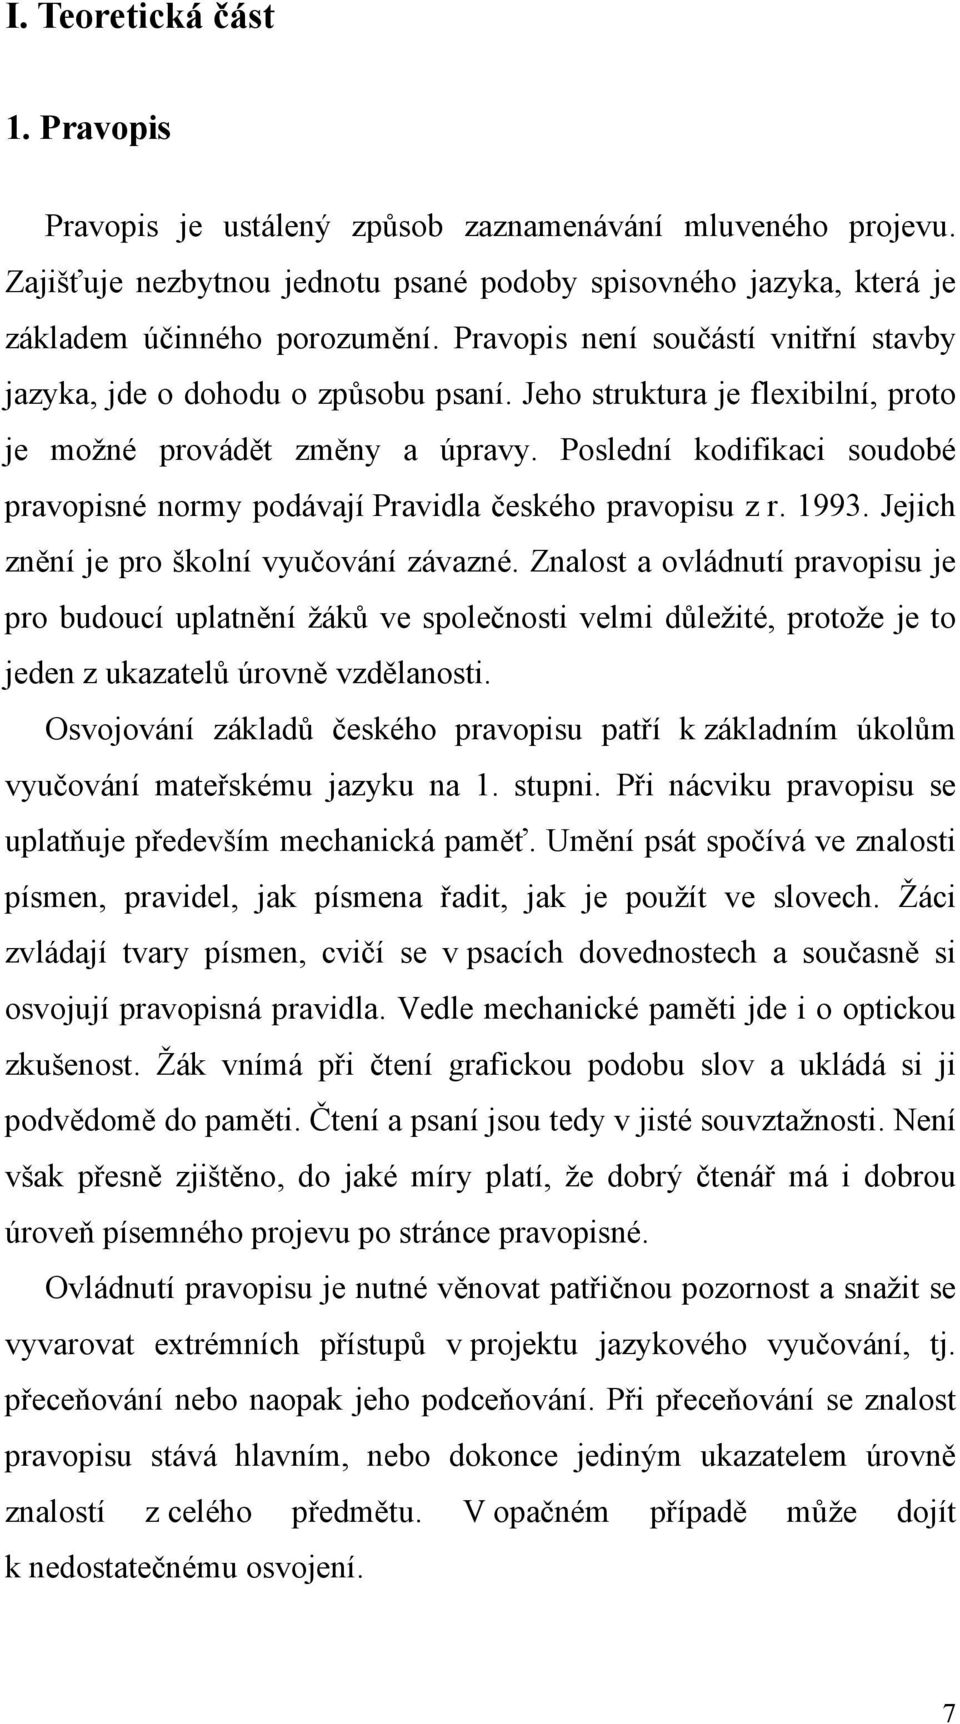 Poslední kodifikaci soudobé pravopisné normy podávají Pravidla českého pravopisu z r. 1993. Jejich znění je pro školní vyučování závazné.